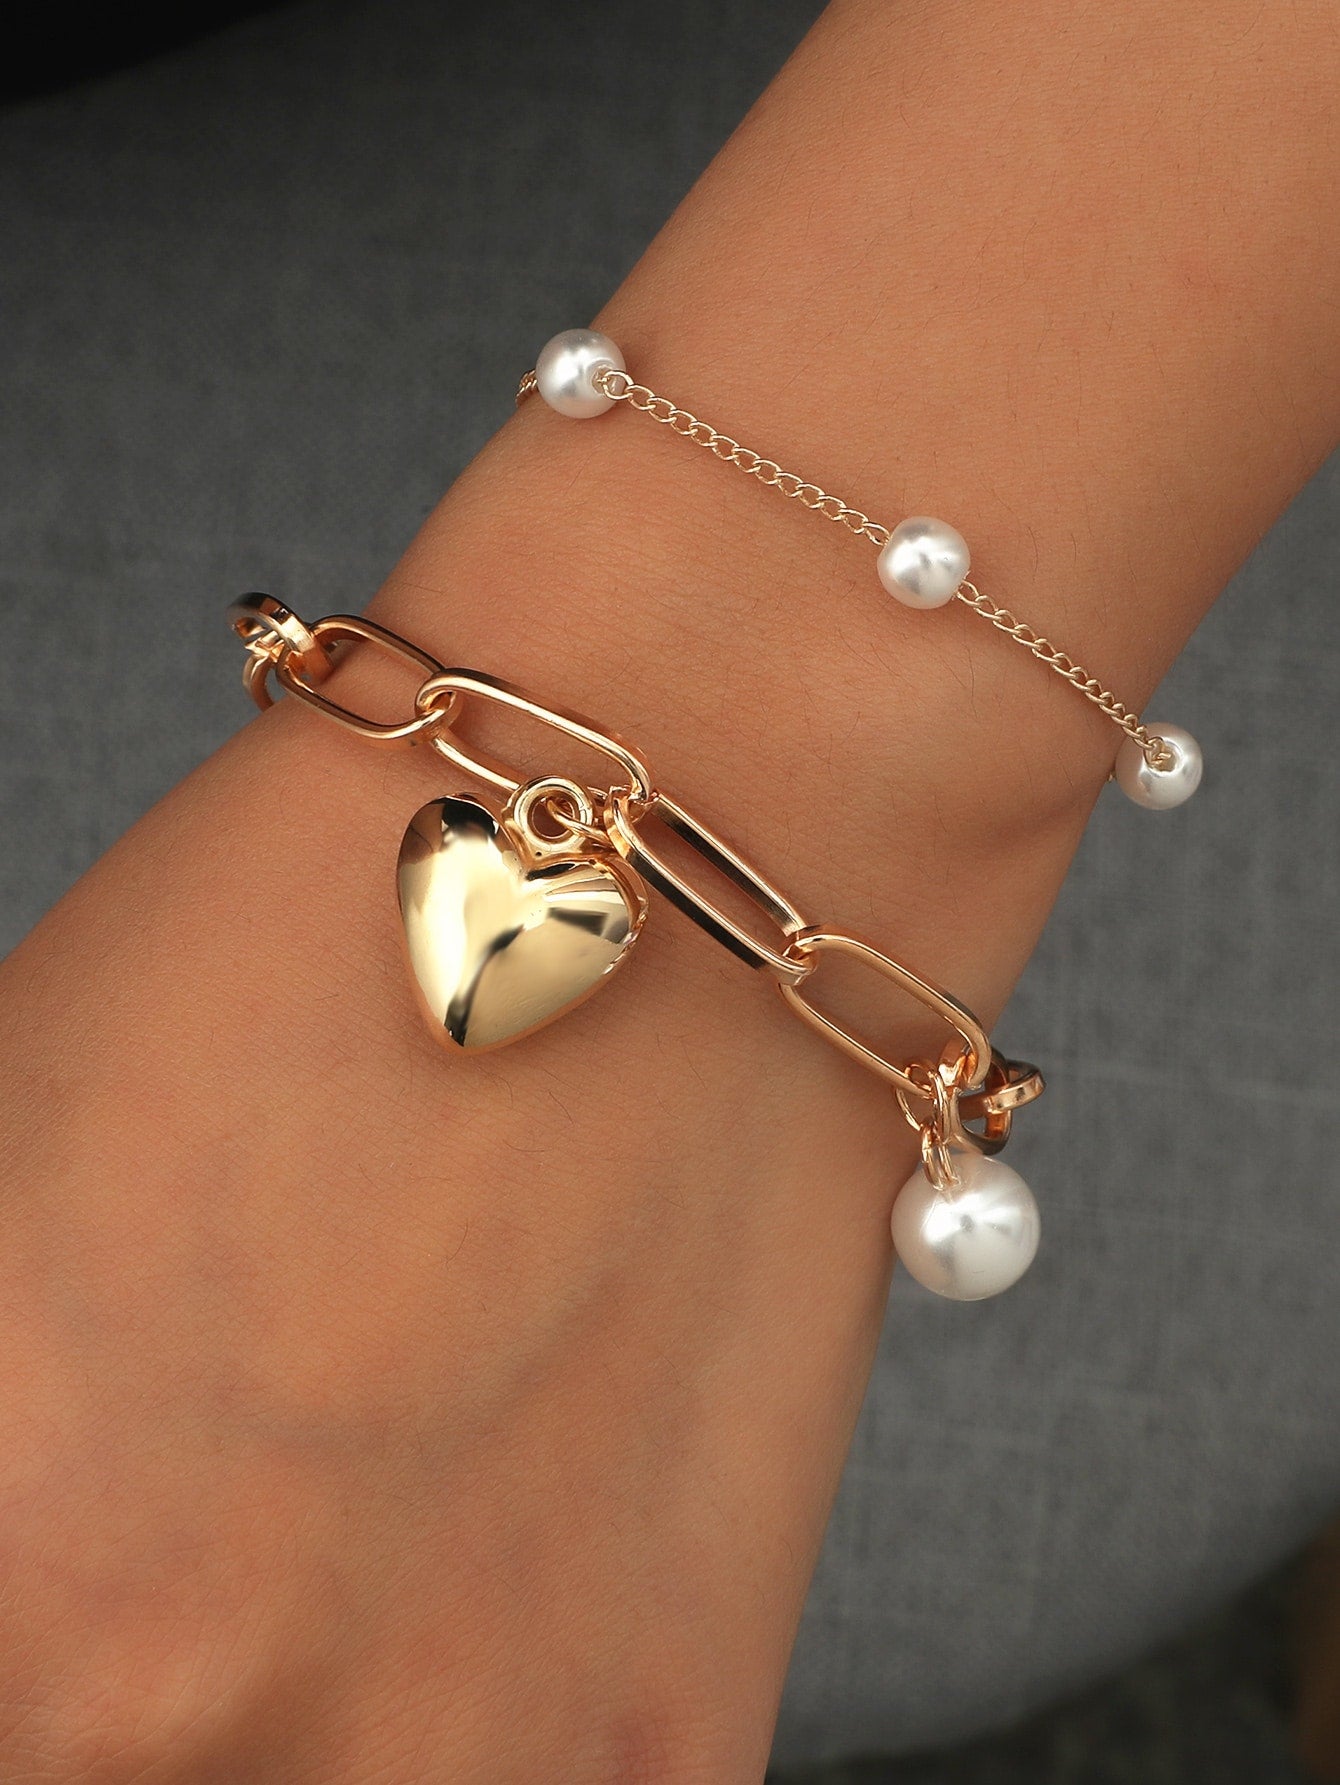 2pcs Faux Pearl & Heart Decor Bracelet for Women Girls Gifts